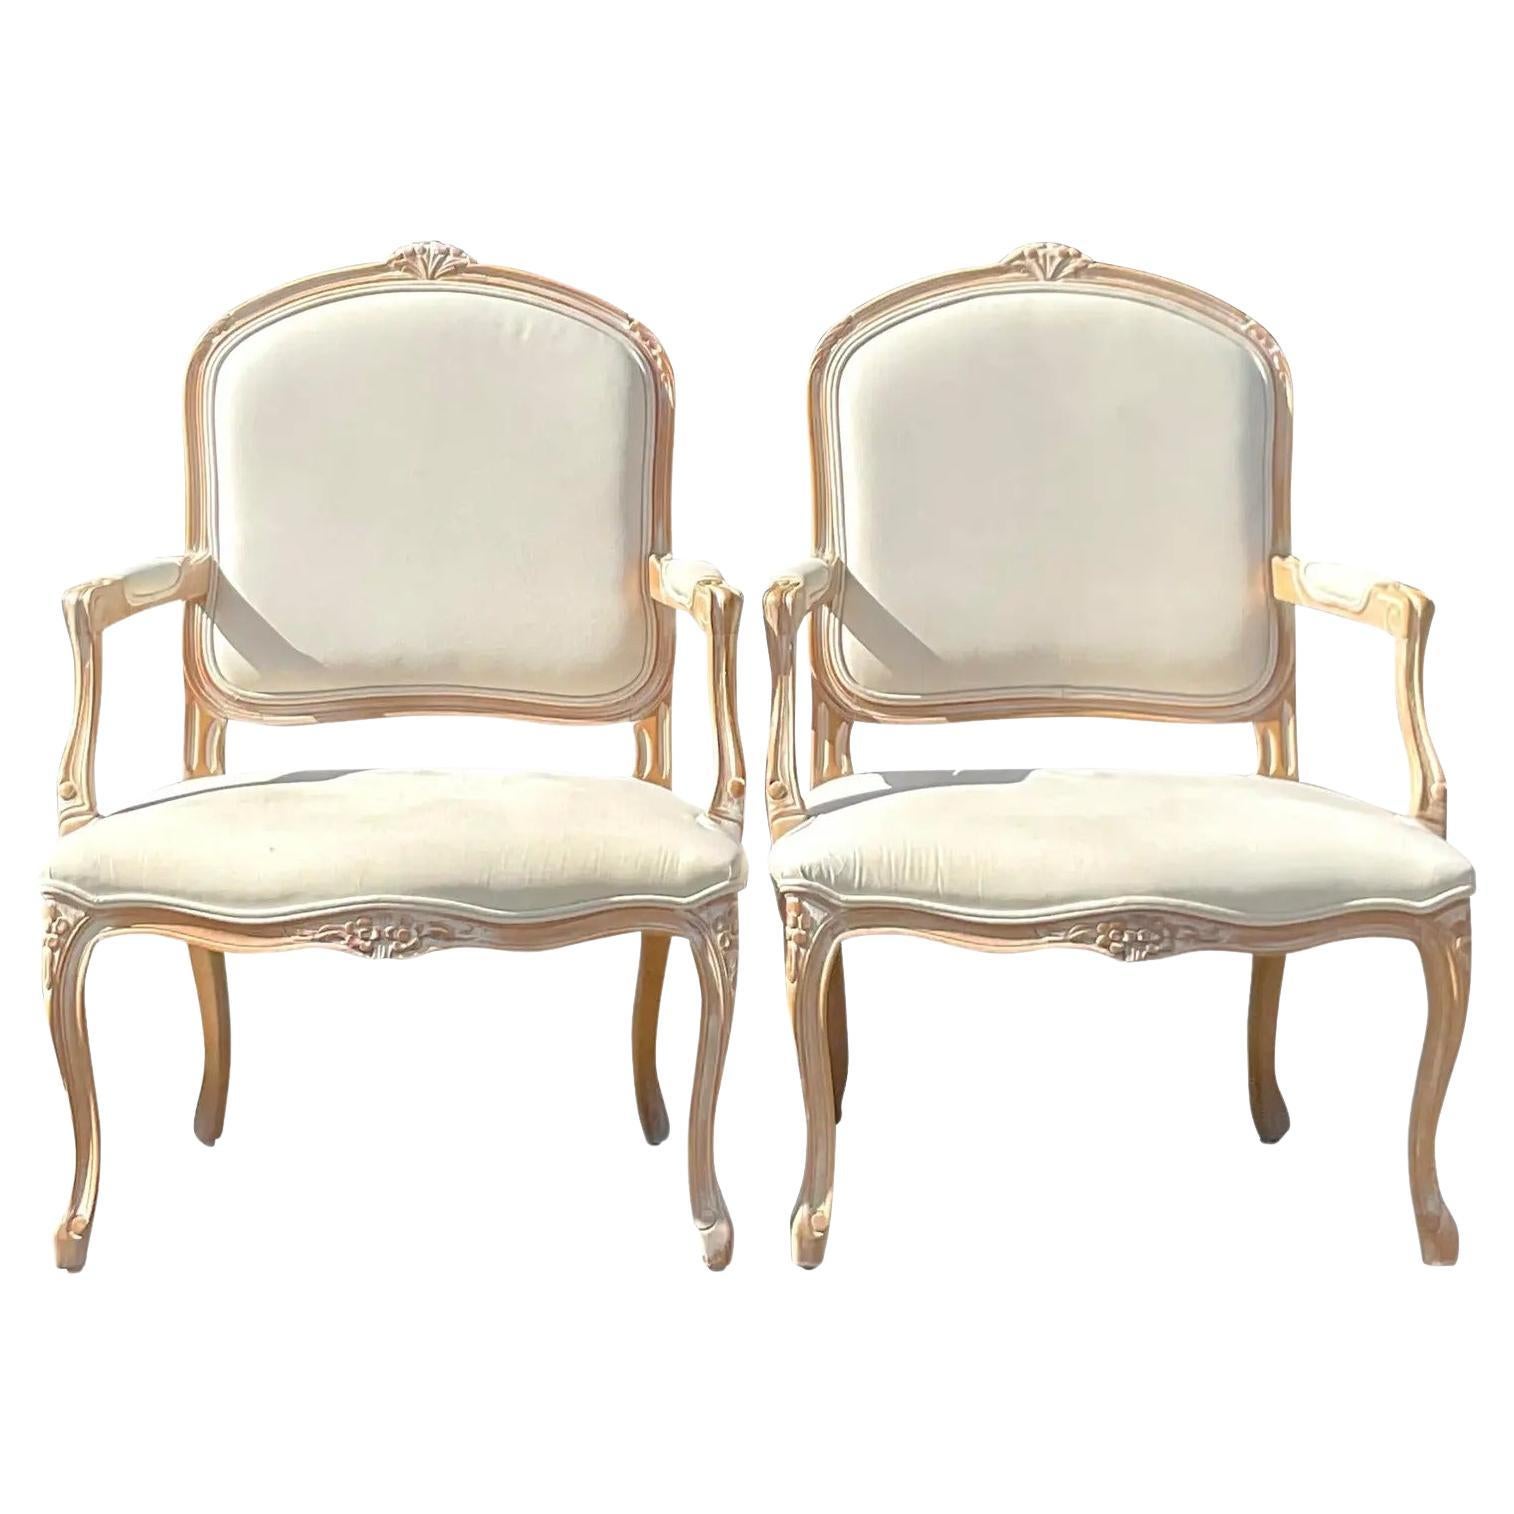 Vintage Regency Bergere Chairs - A Pair